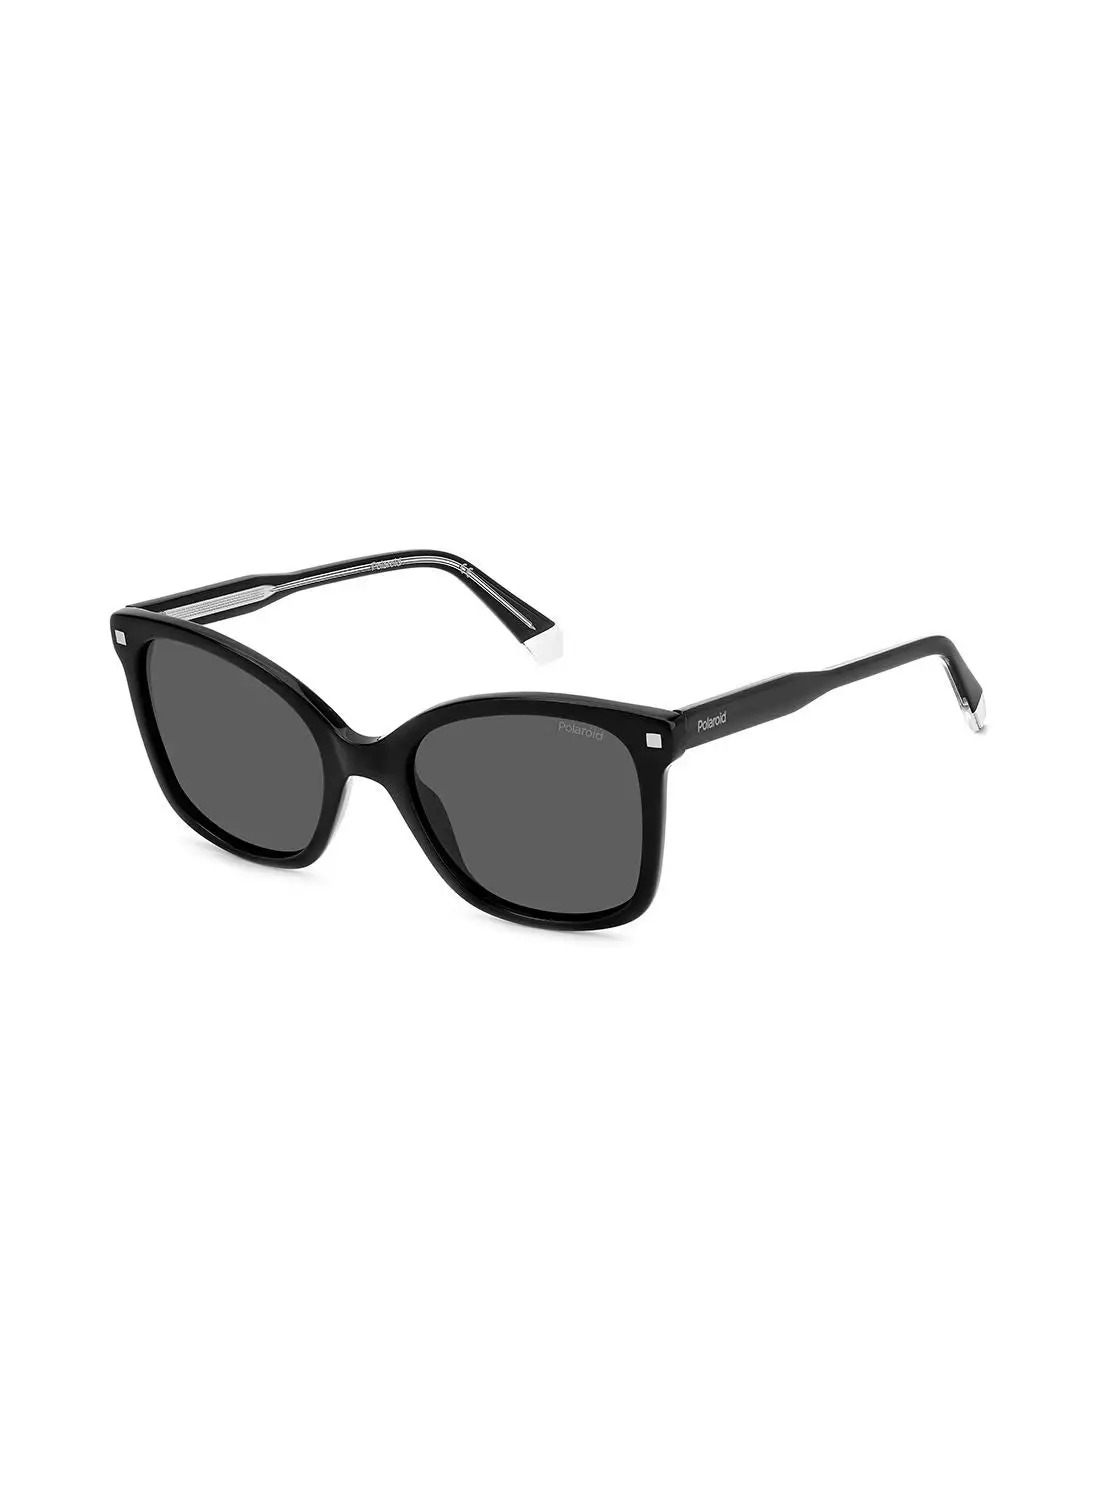 بولارويد نظارة شمسية مربعة للنساء للحماية من الأشعة فوق البنفسجية - Pld 4151/S/X أسود 53 - مقاس العدسة: 53 ملم